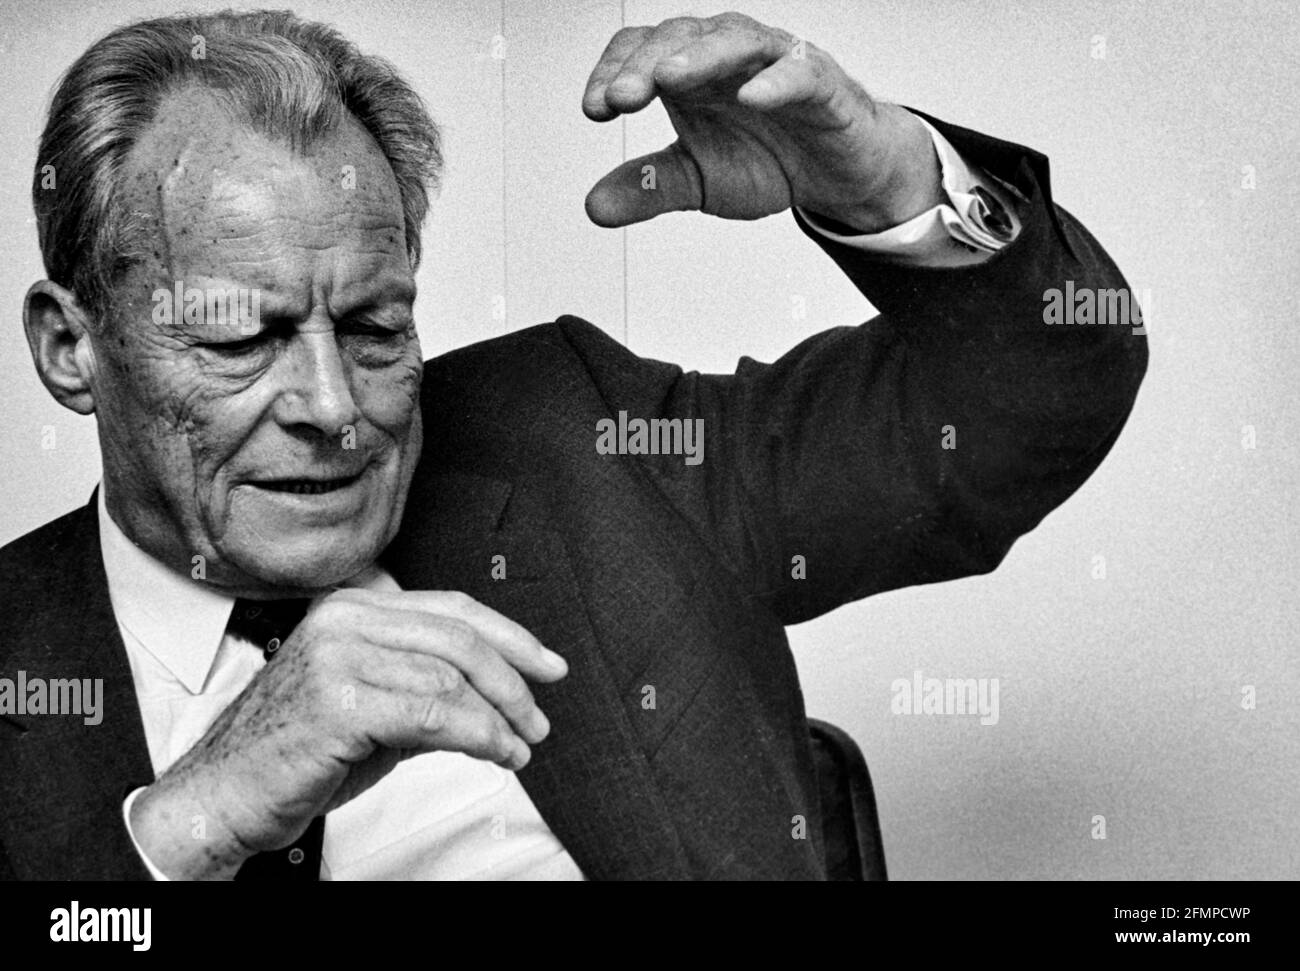 Gestikulierend auf Willy Brandt, den Präsidenten der Sozialistischen Internationale, während eines Interviews in seinem Büro in Bonn. 02.10.1985 - Christoph Keller Stockfoto